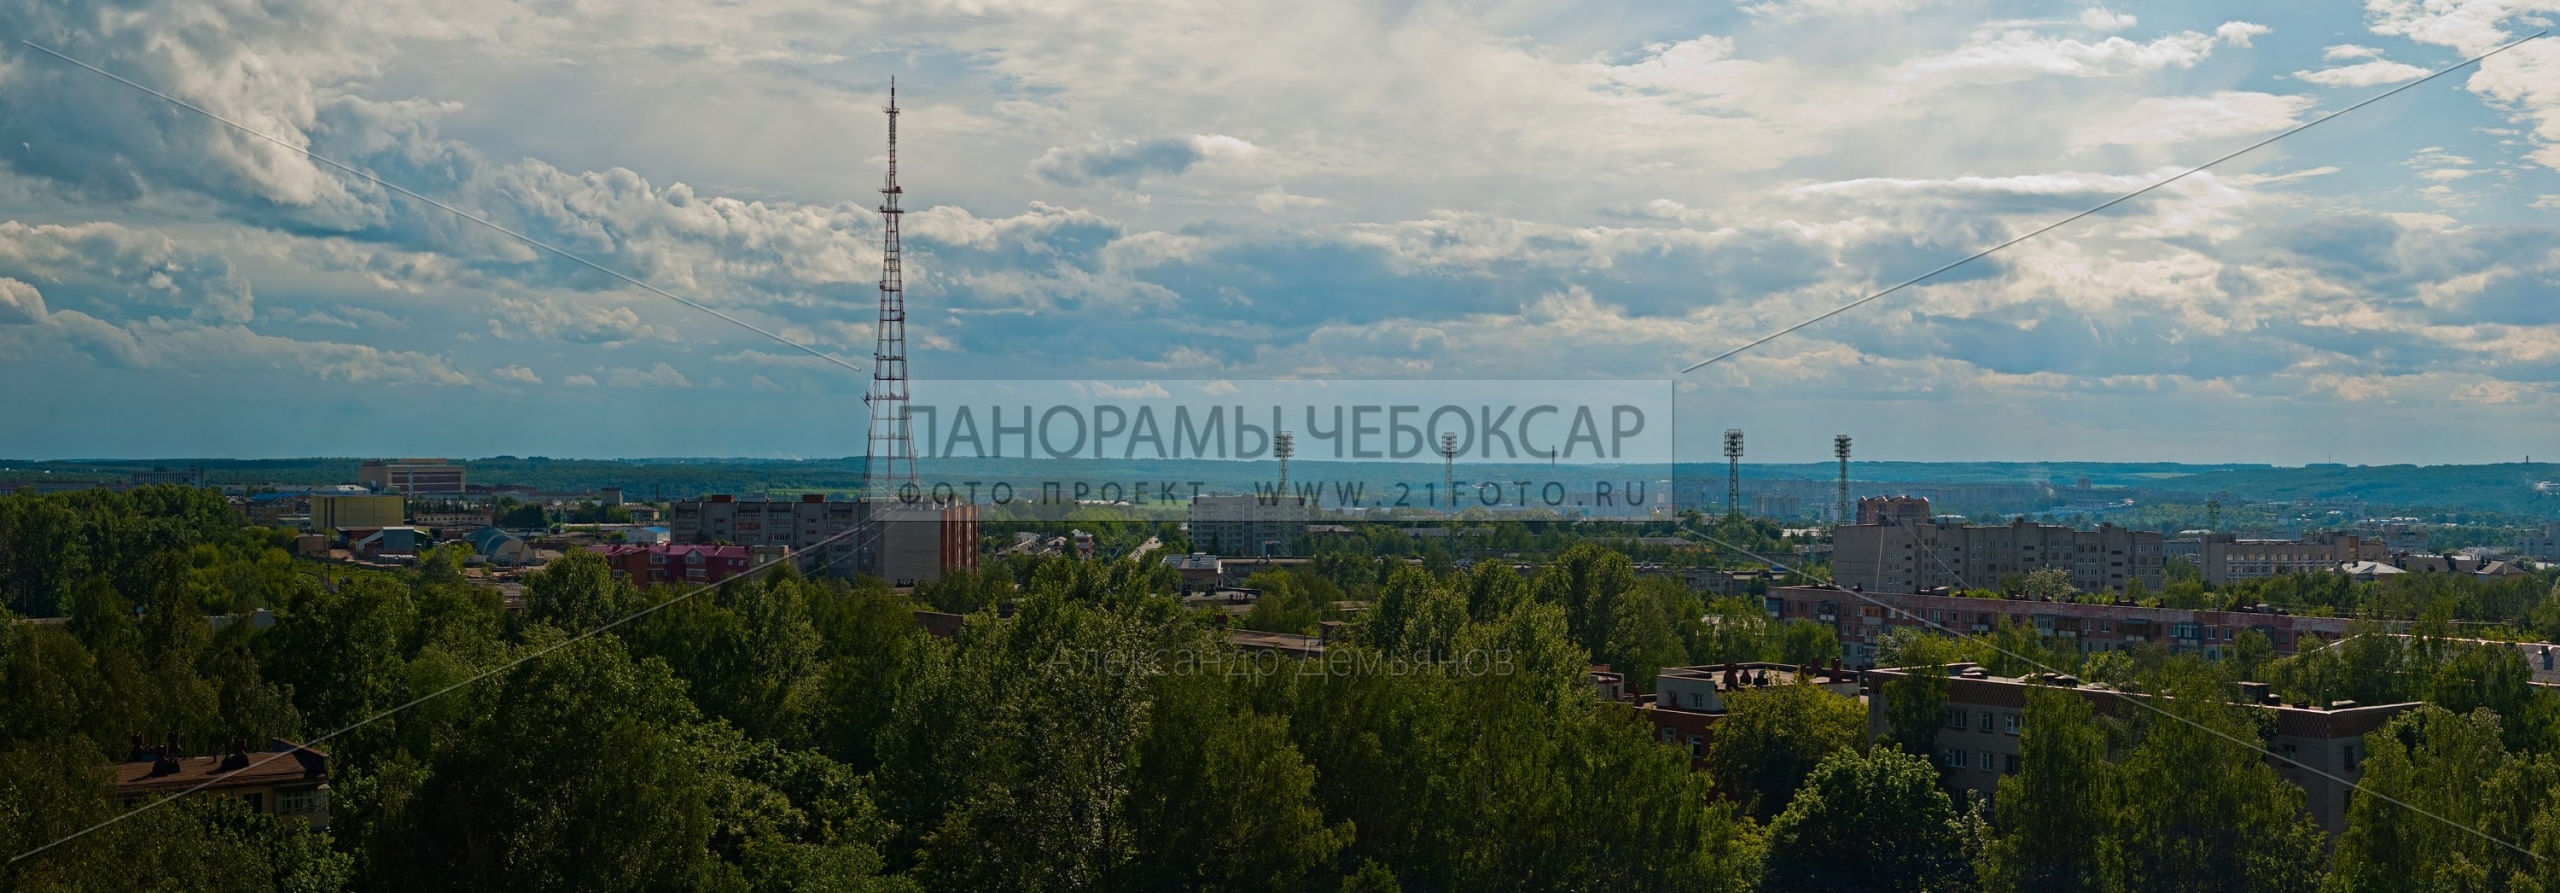 Фото вид на телебашню и центральный стадион Чебоксар с 12 этажа